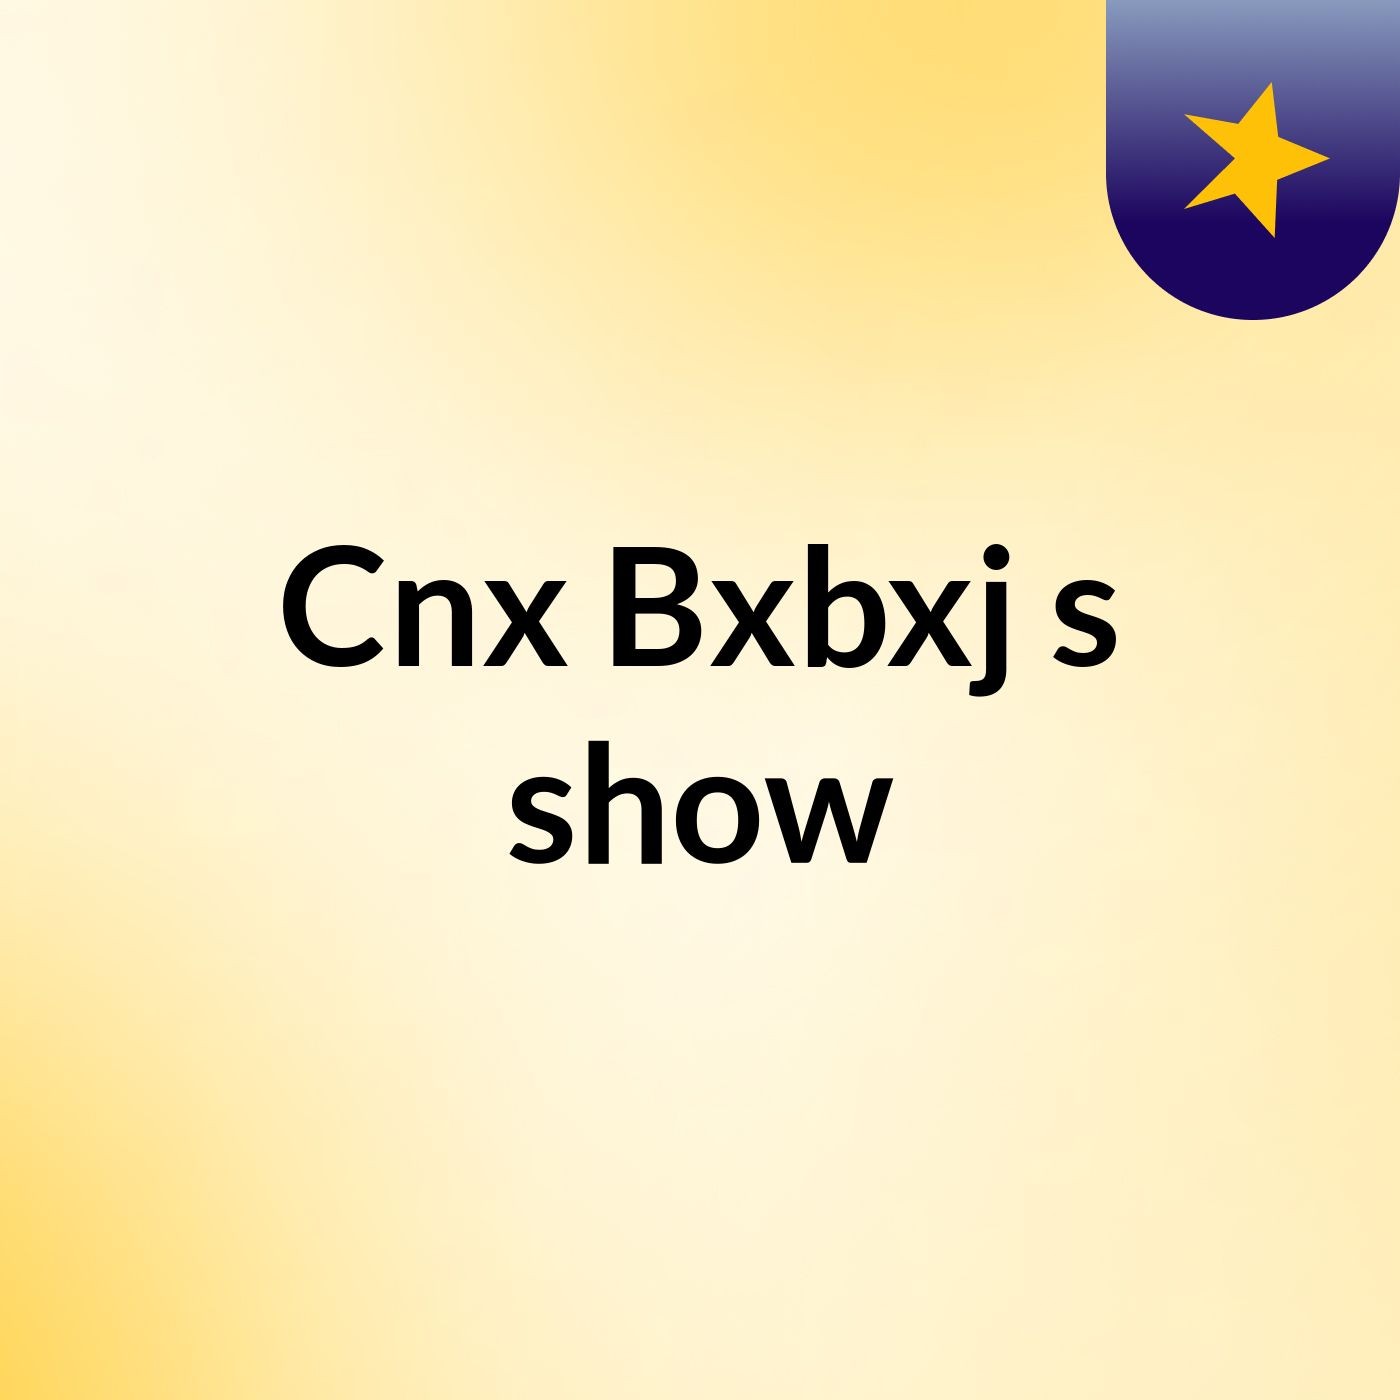 Cnx Bxbxj's show